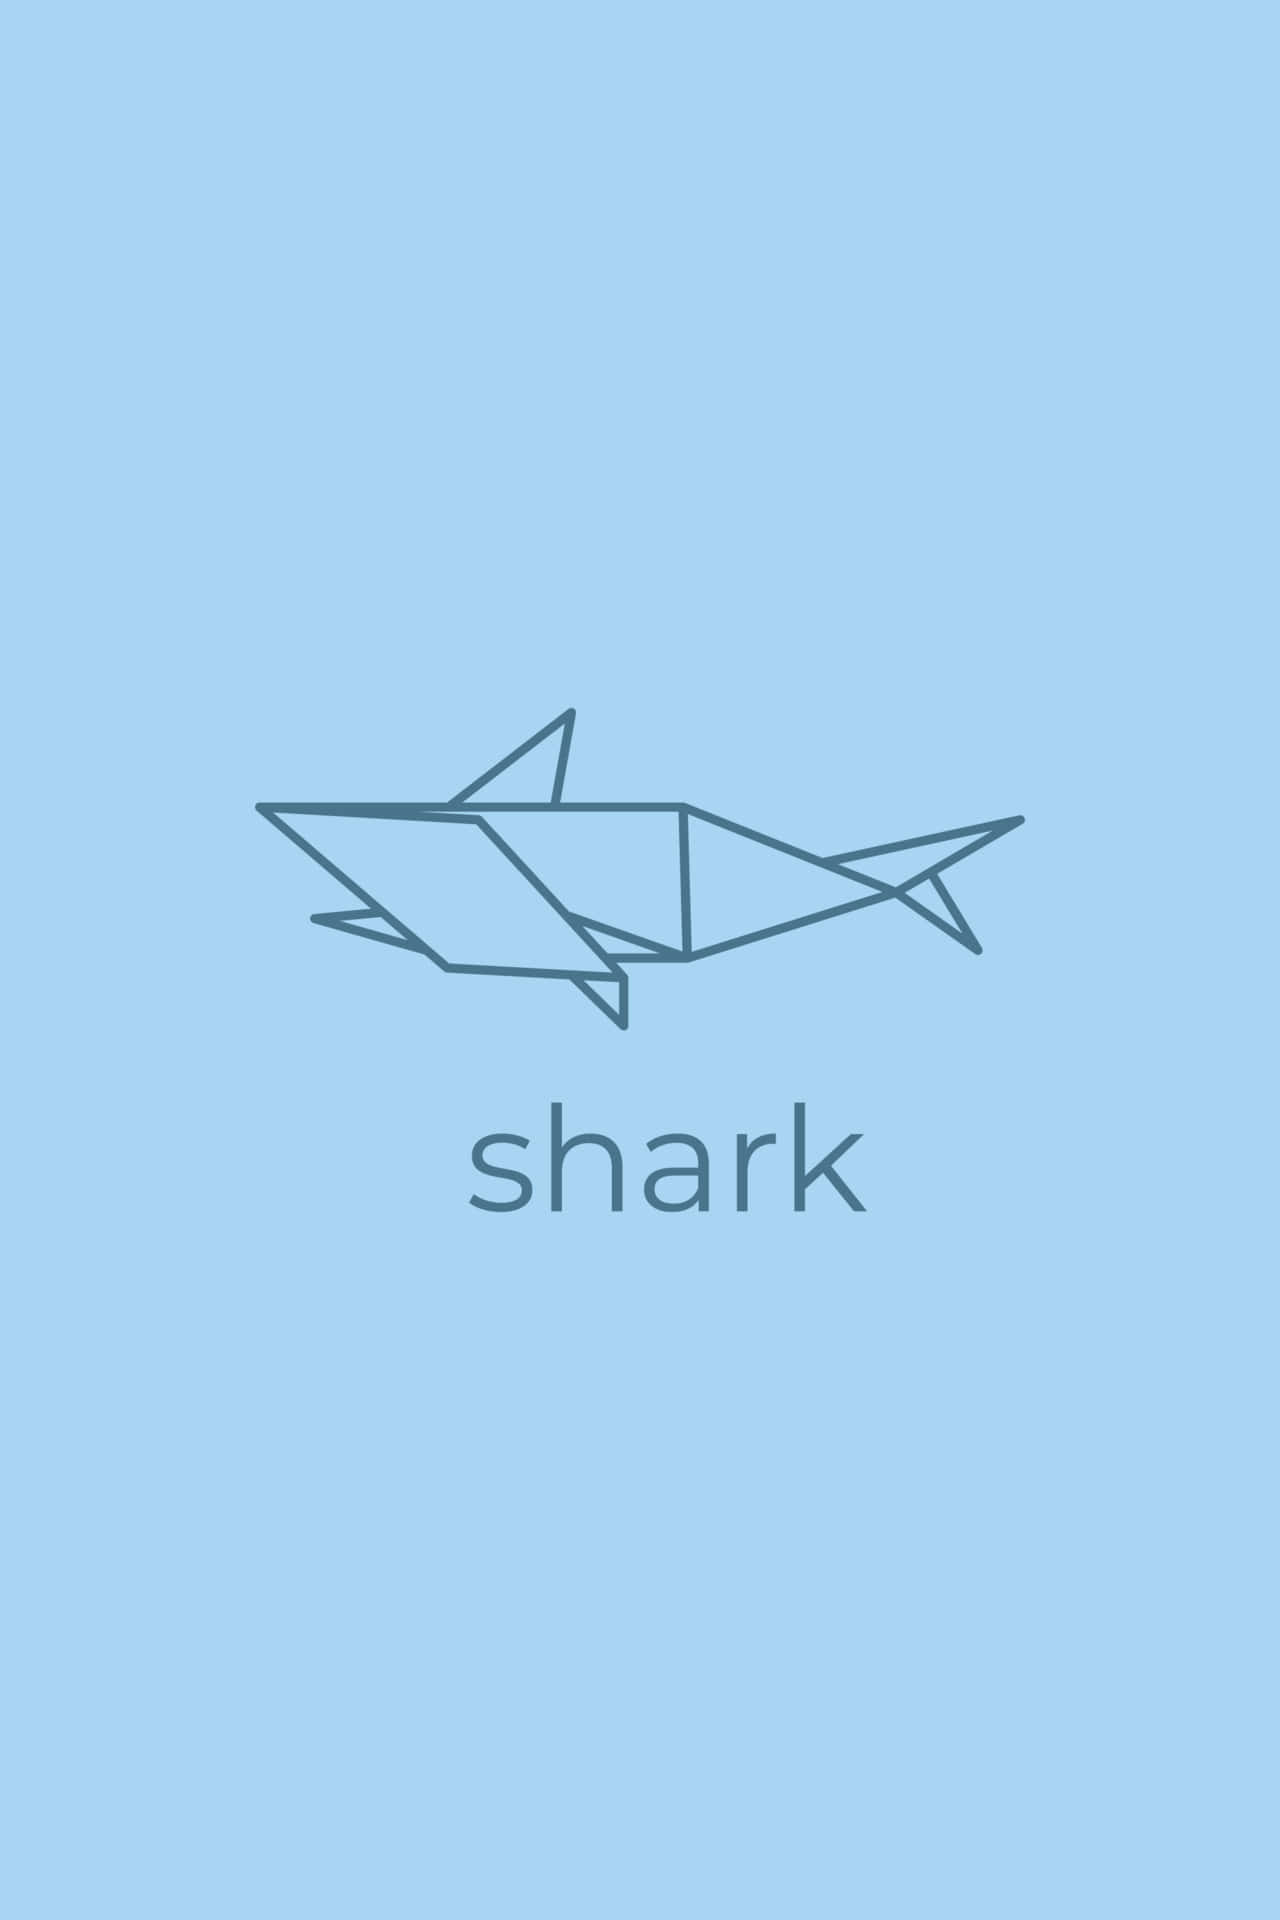 Minimalist Geometric Shark Design Wallpaper